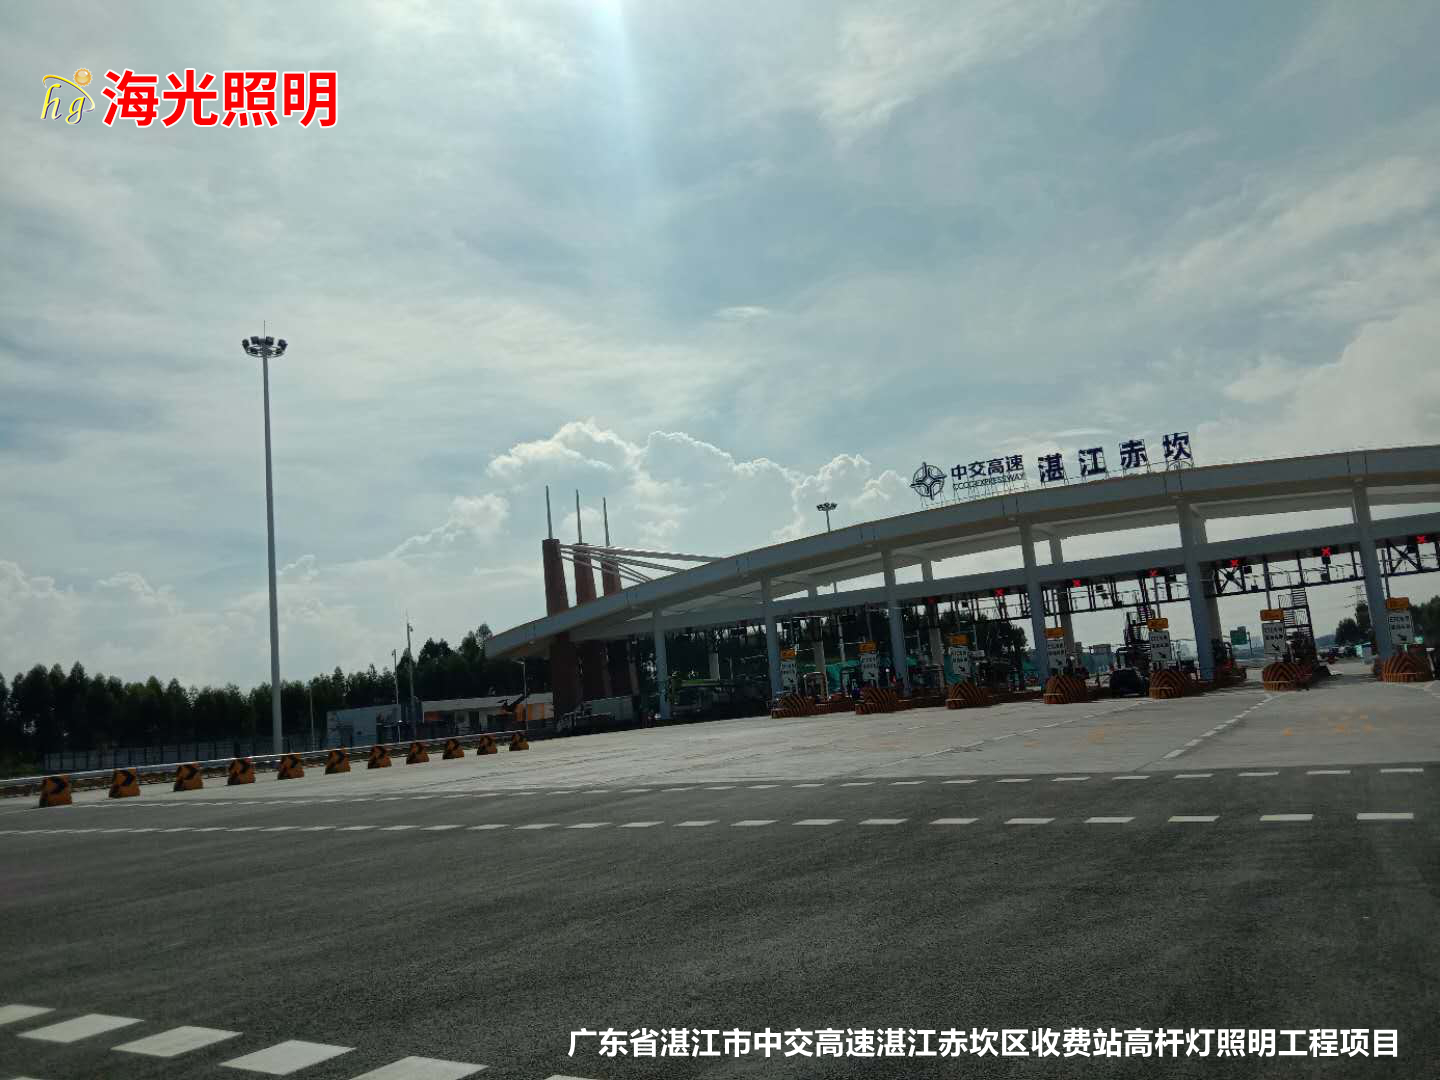 广东省湛江市中交高速湛江赤坎区收费站高杆灯照明工程项目